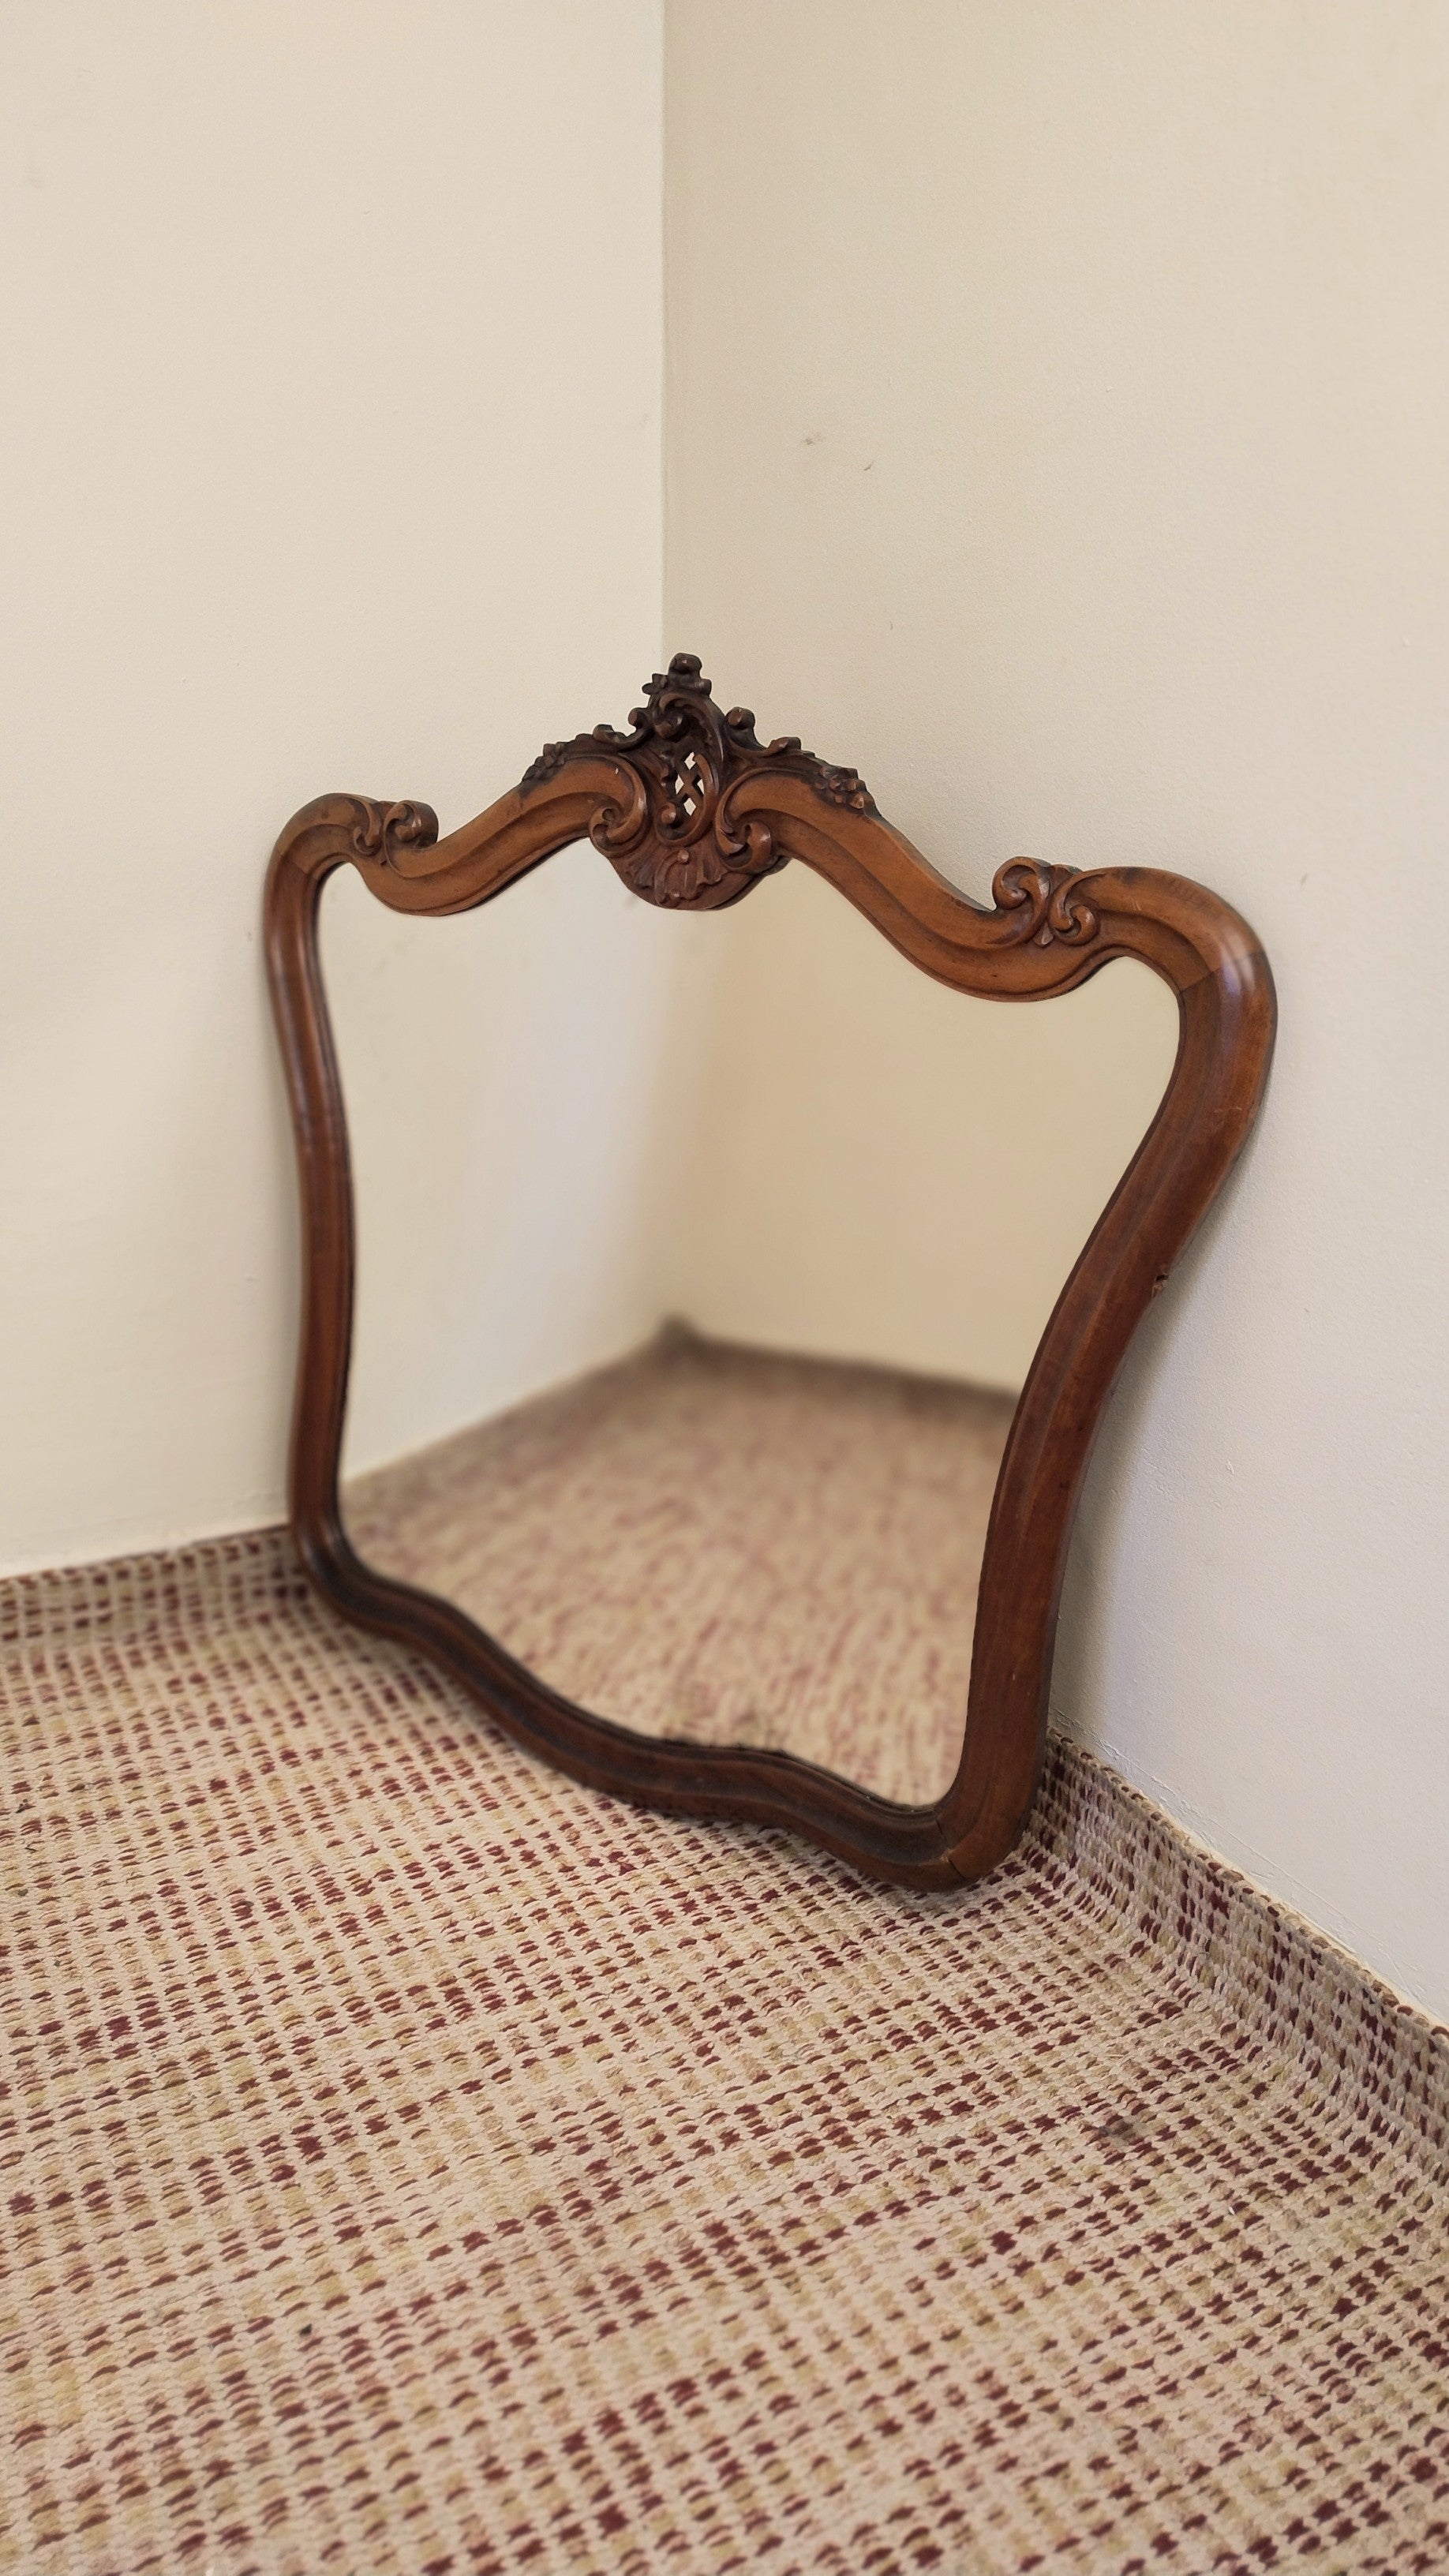 Espelho bisotado provençal anos 60 em Imbuia maciça (81cm X 67cm)